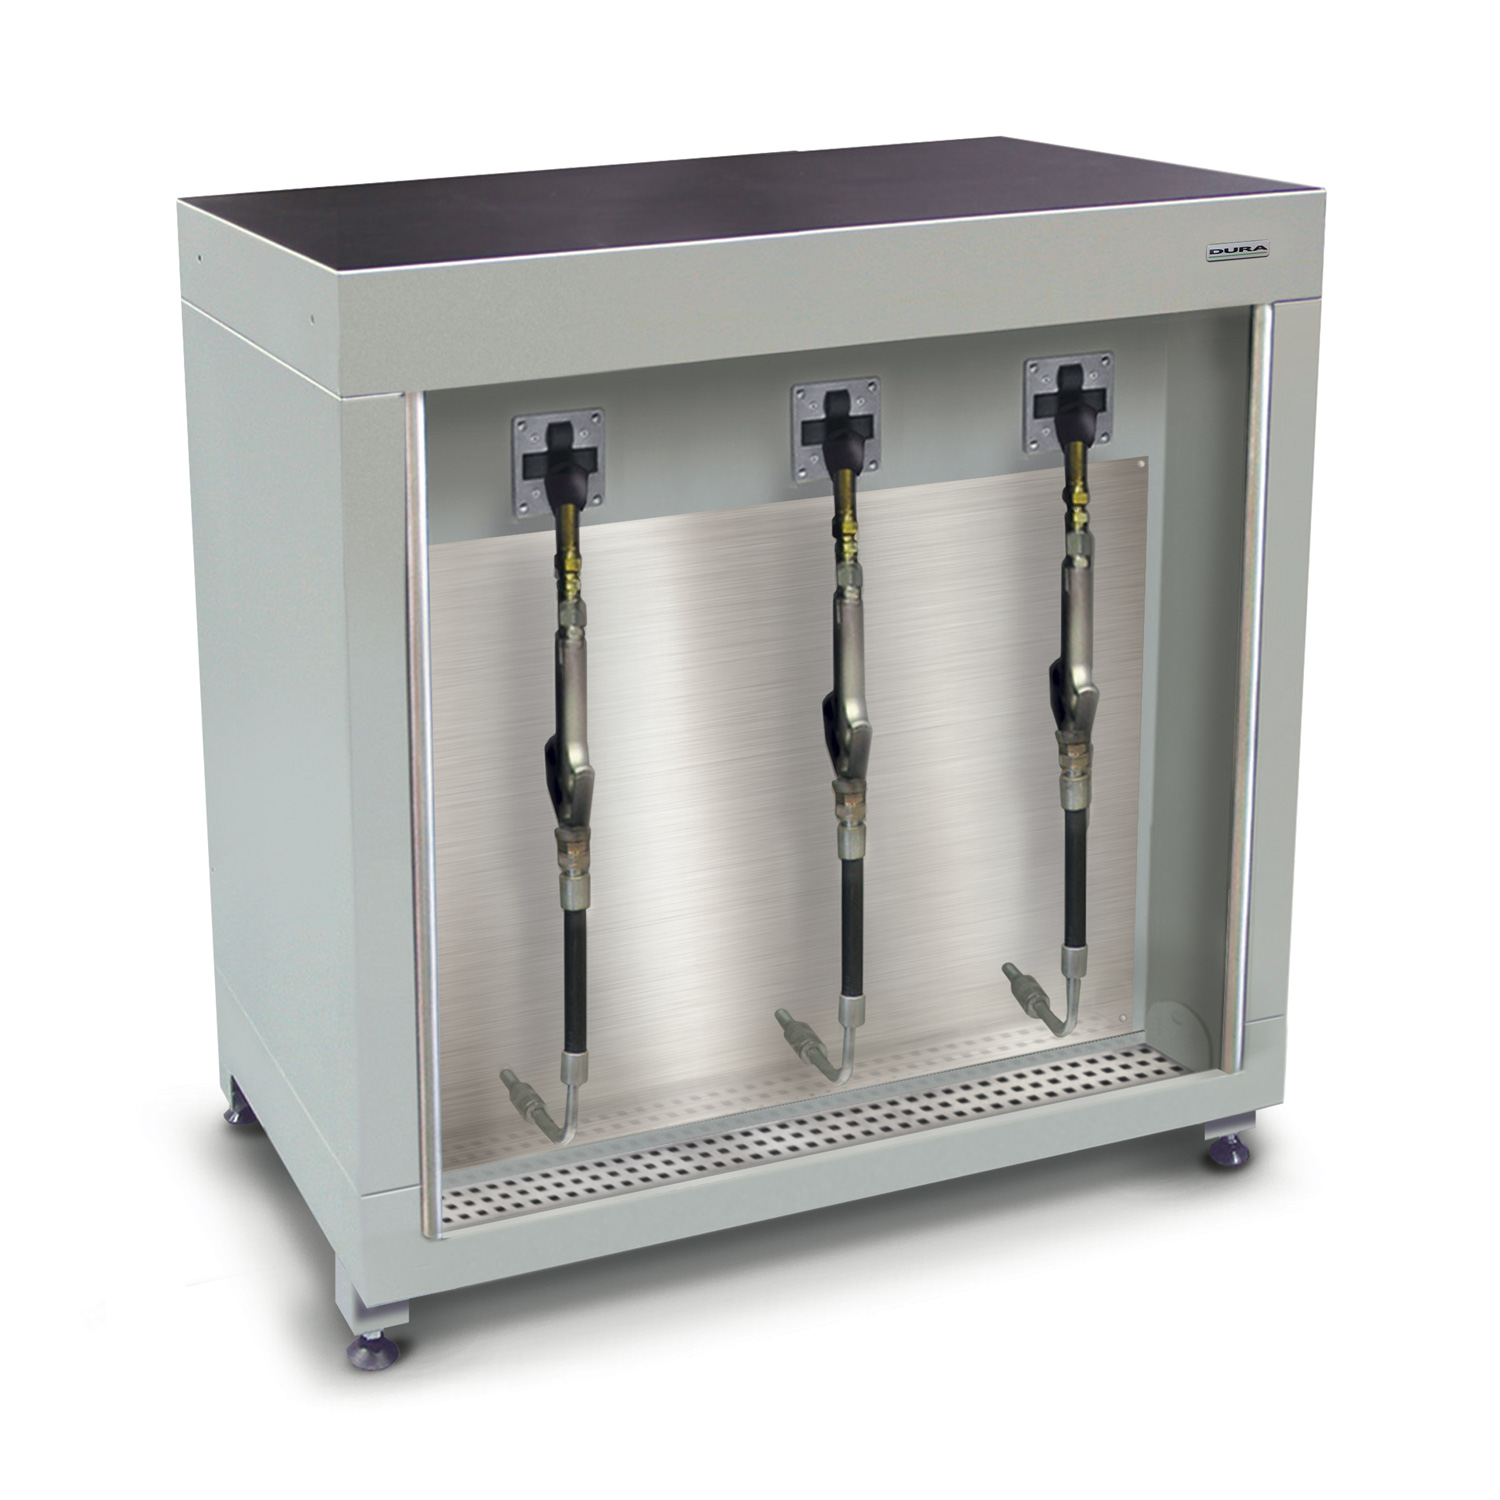 900mm Low-level fluid management cabinet (600mm depth)